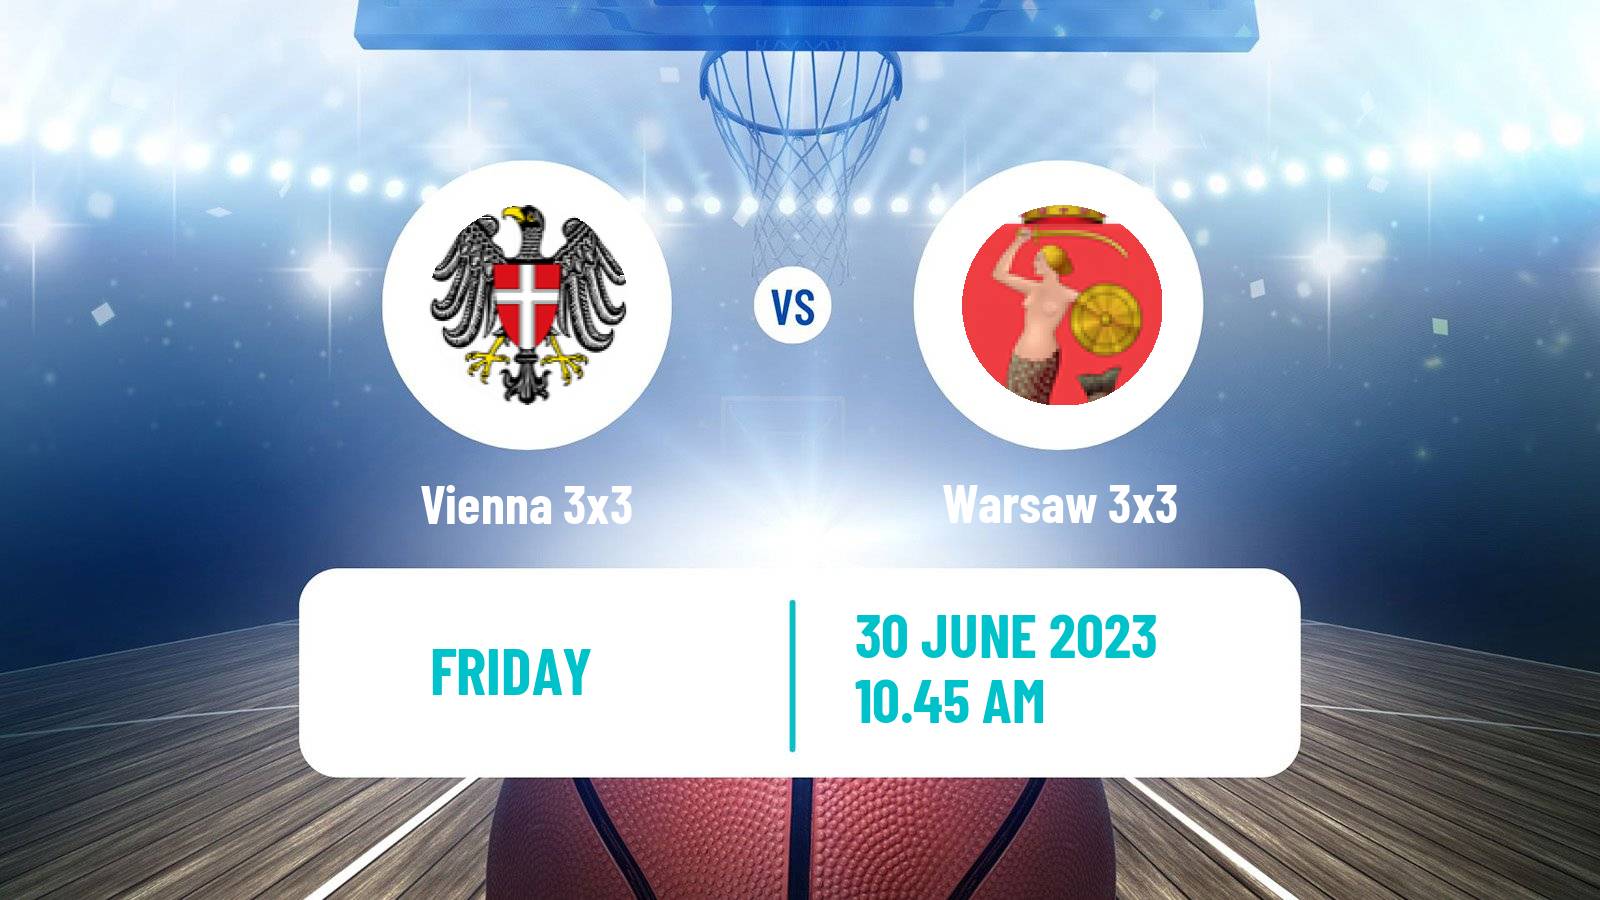 Basketball World Tour Marseille 3x3 Vienna 3x3 - Warsaw 3x3